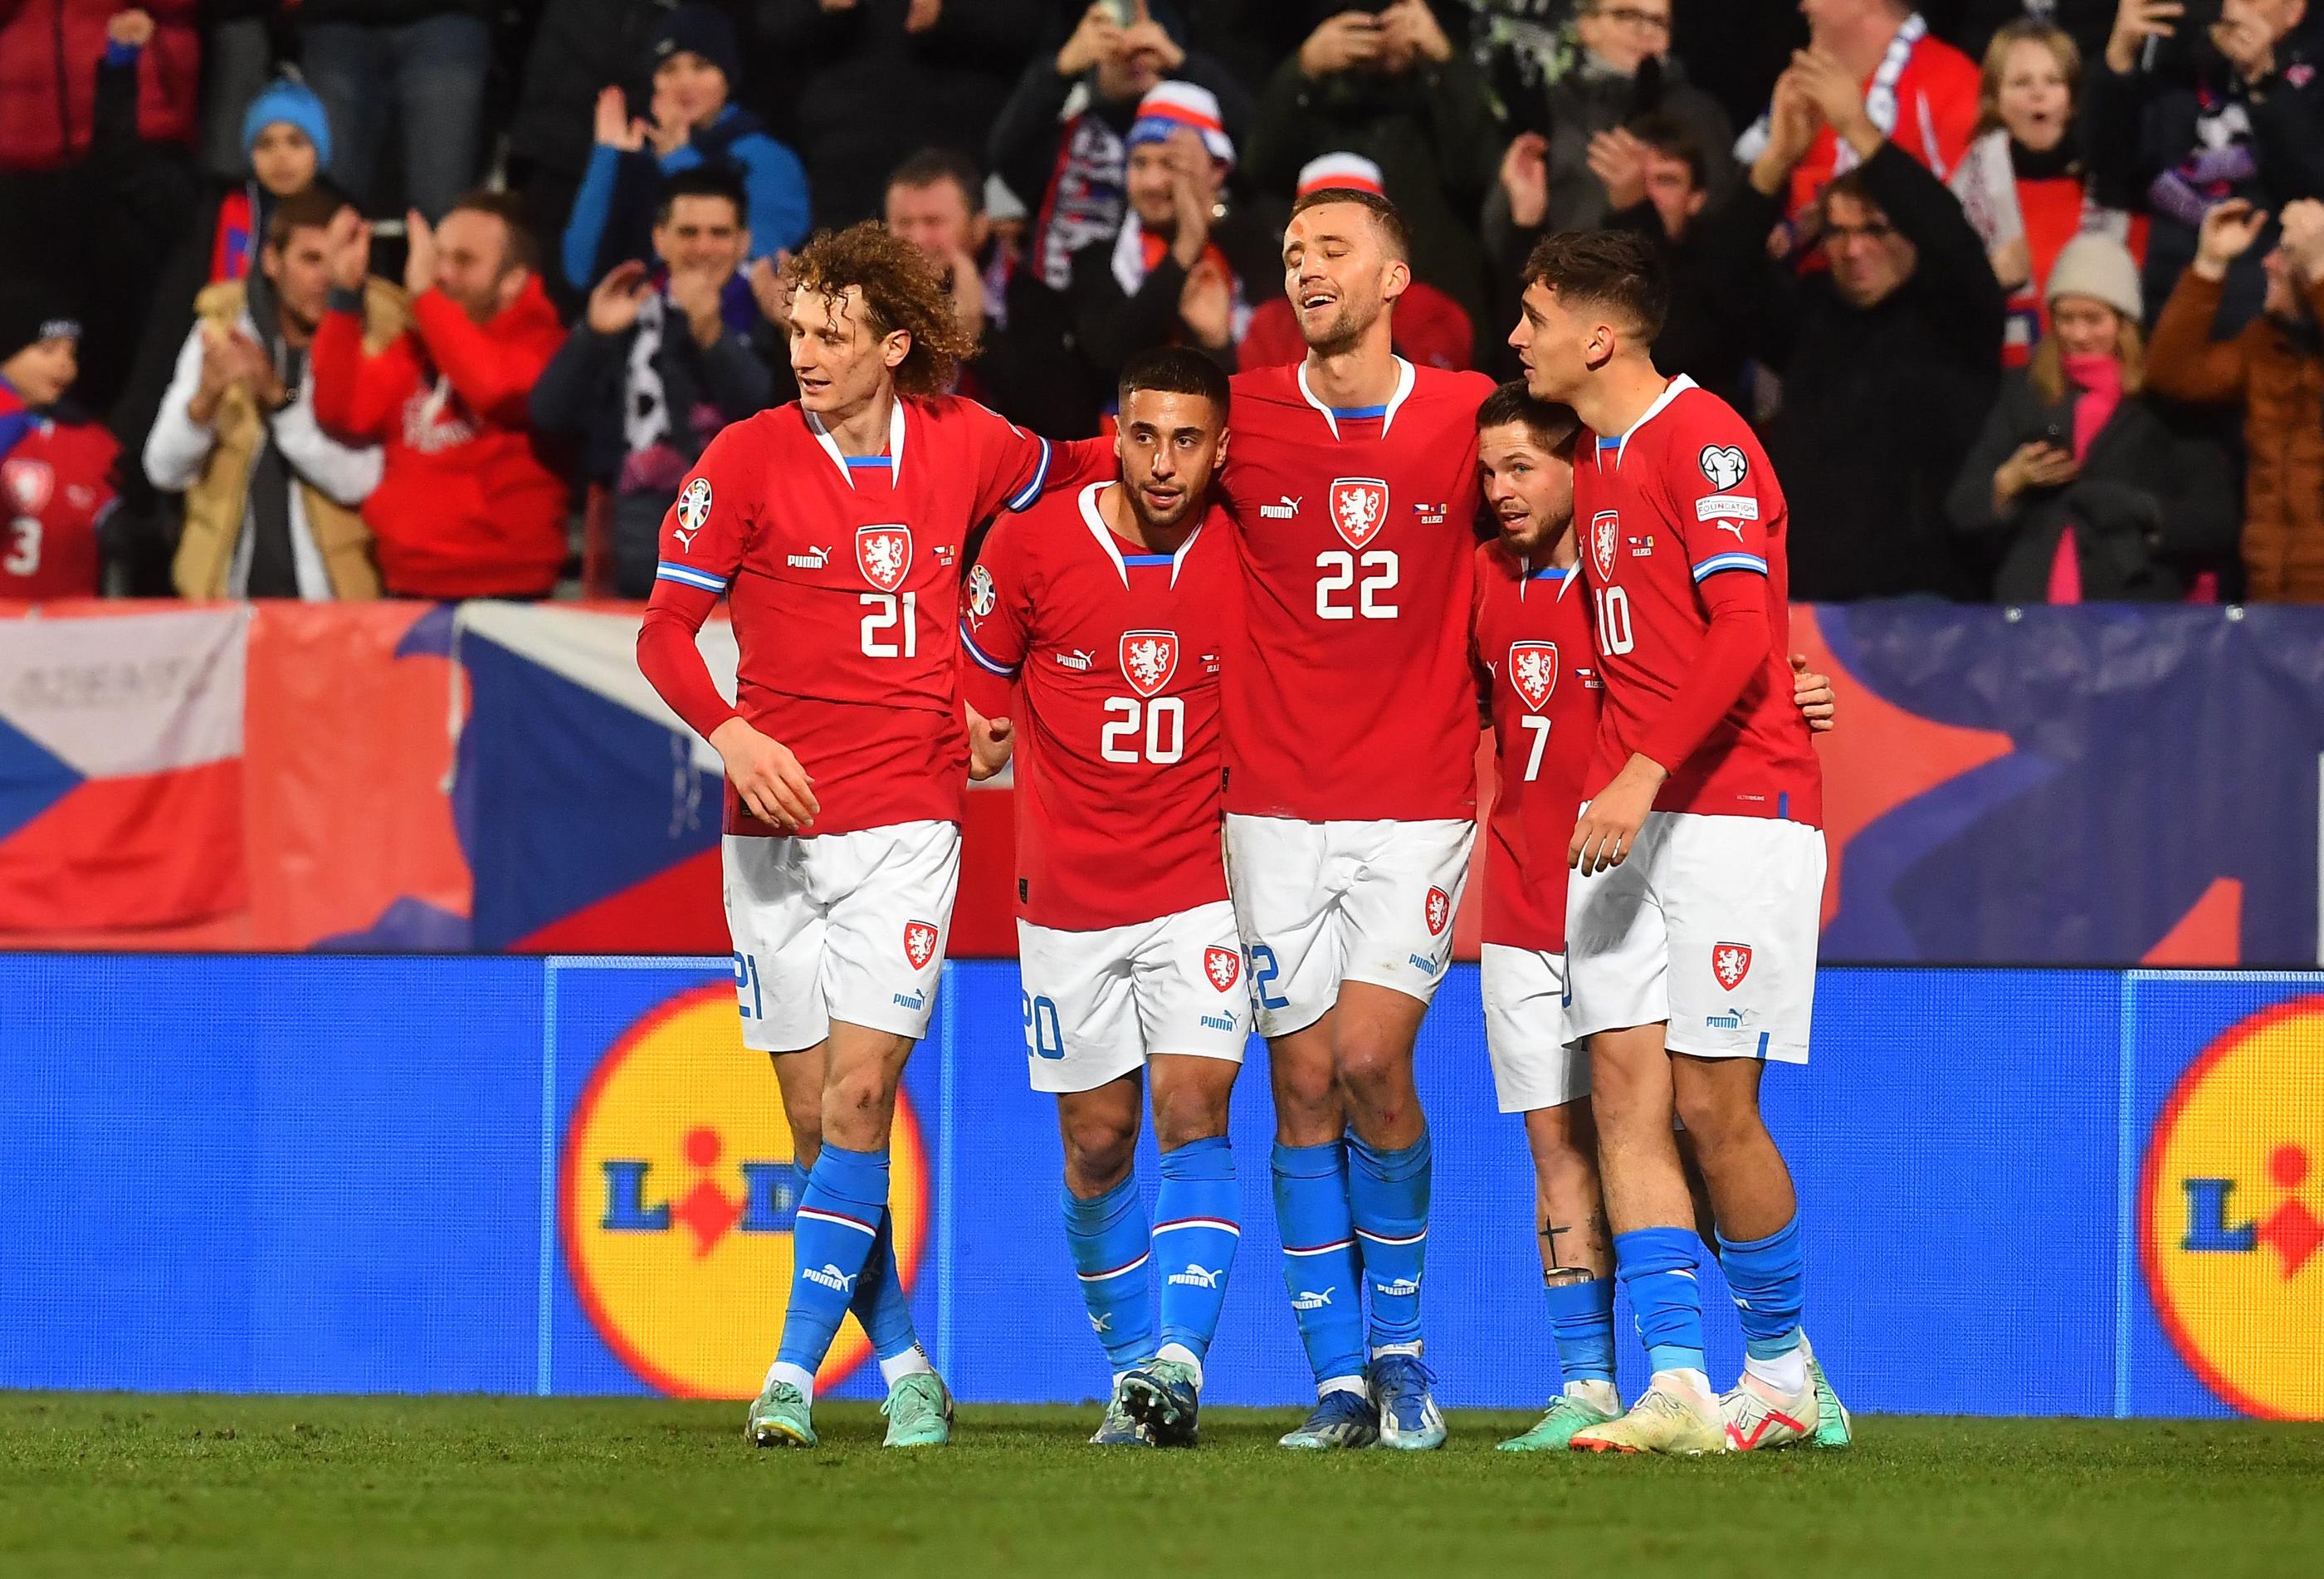 Malgré des éliminatoires médiocres, les Tchèques se sont qualifiés pour l'Euro 2024 en battant la Moldavie 3-0 lundi soir. AFP/Michal Cizek